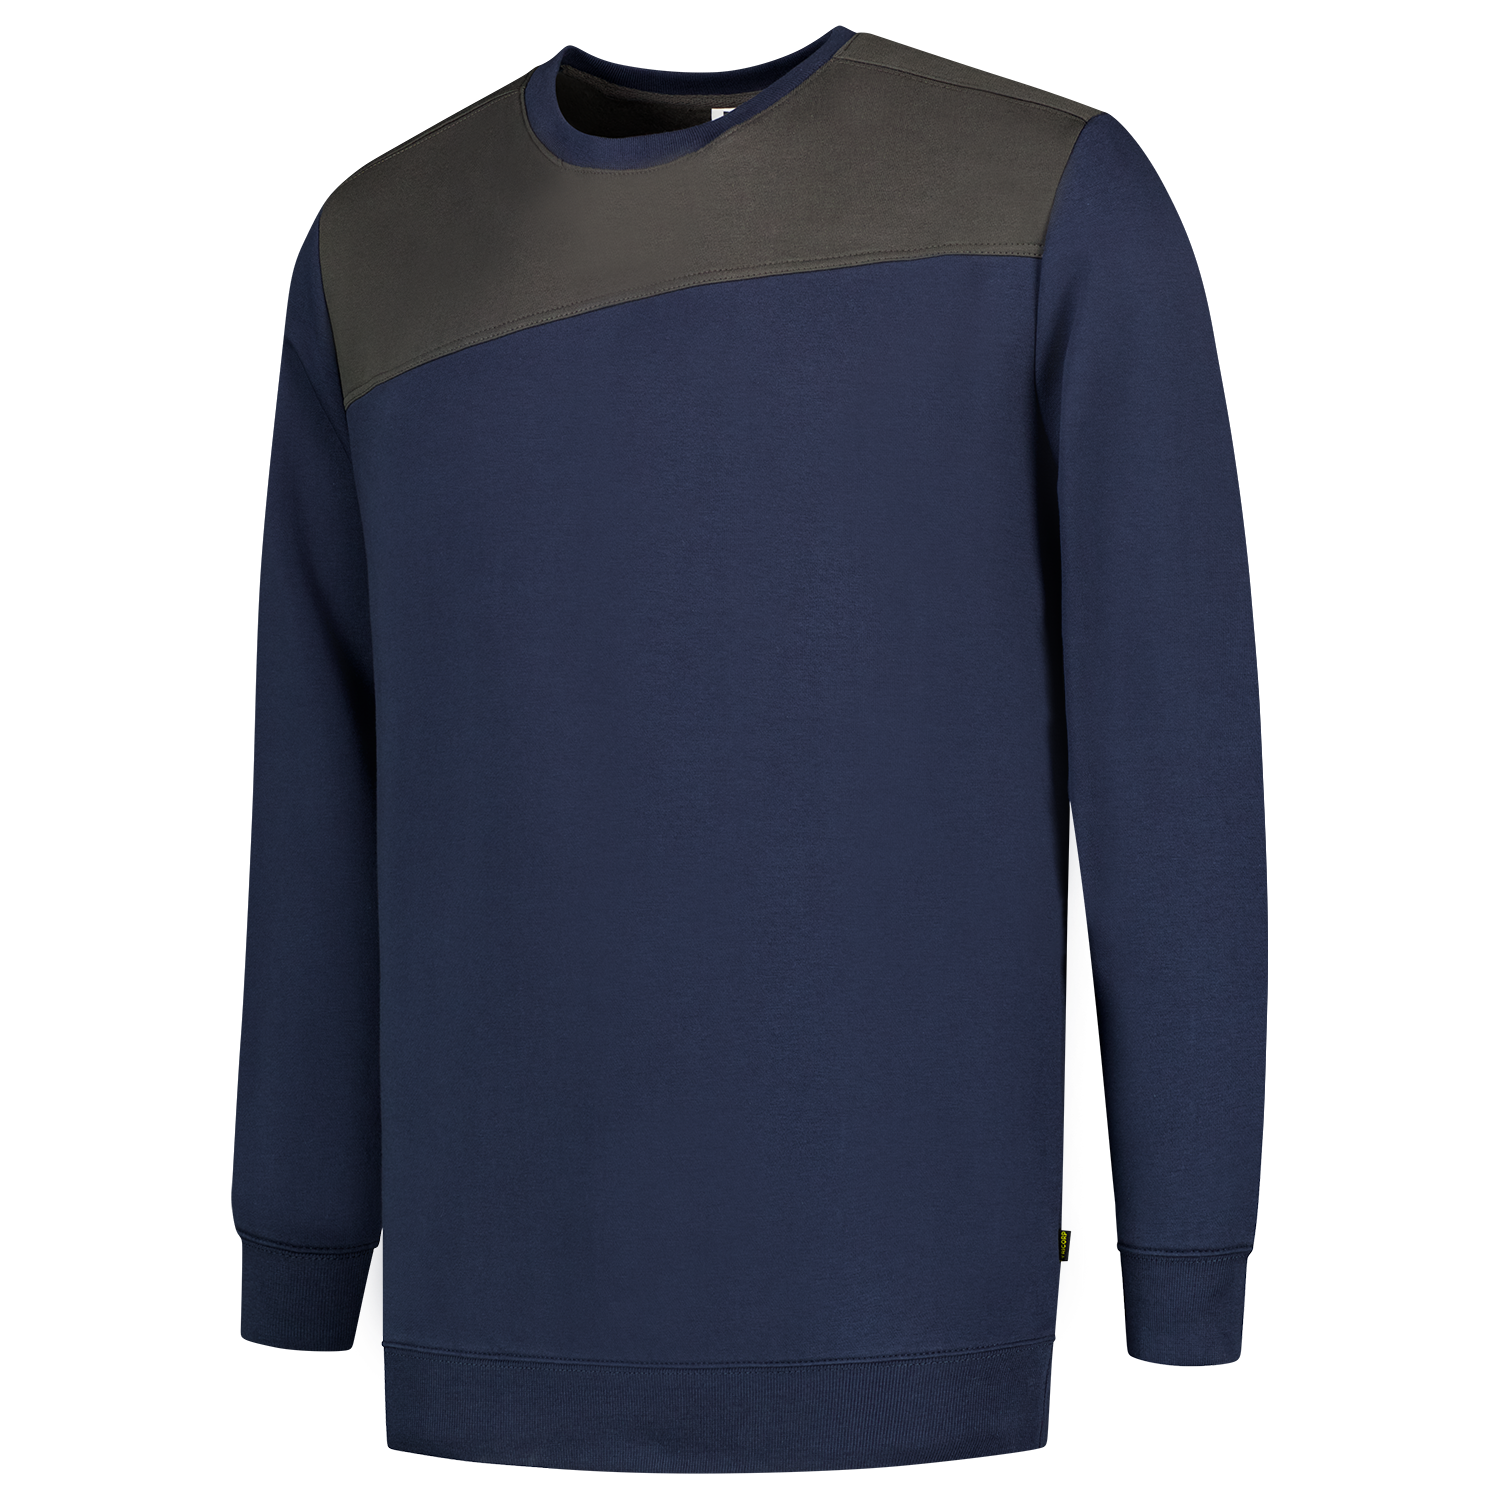 Sweater Bicolor Naden 302013